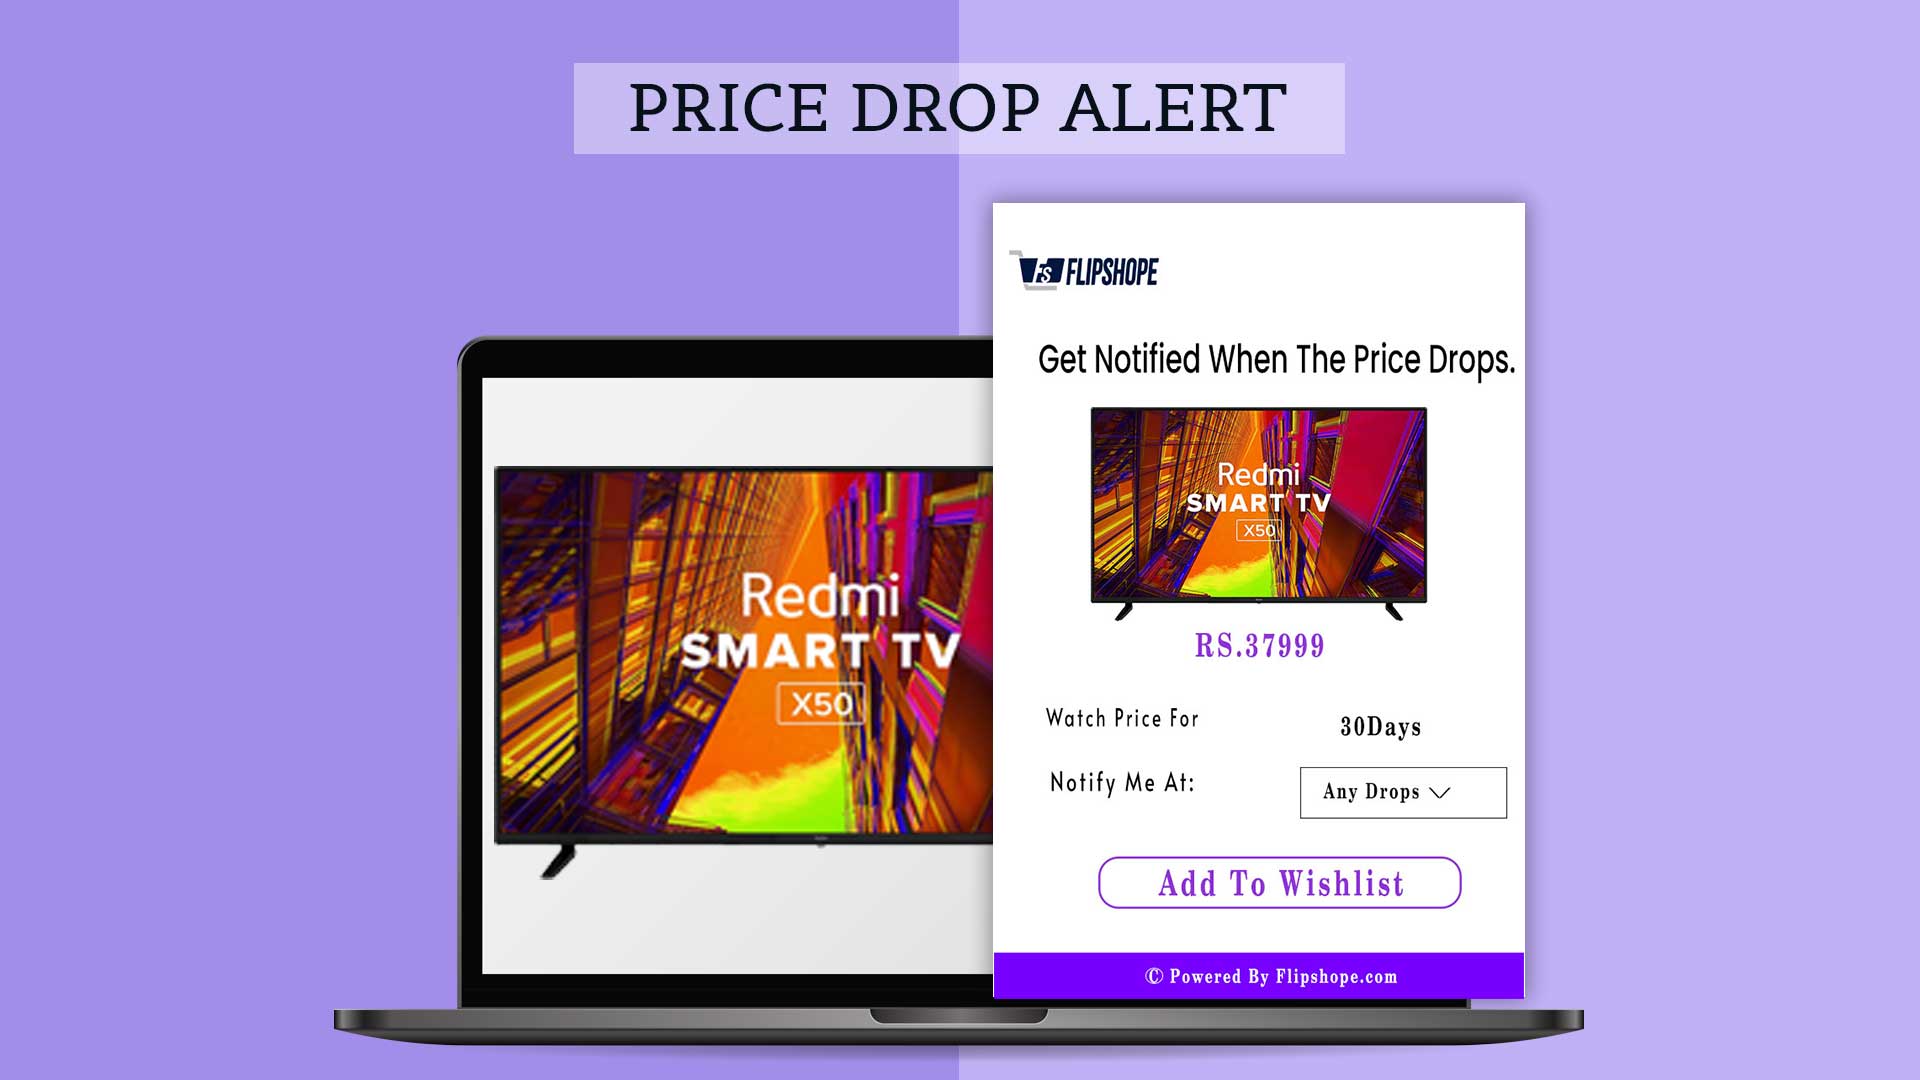 Flipshope feature price drop alert